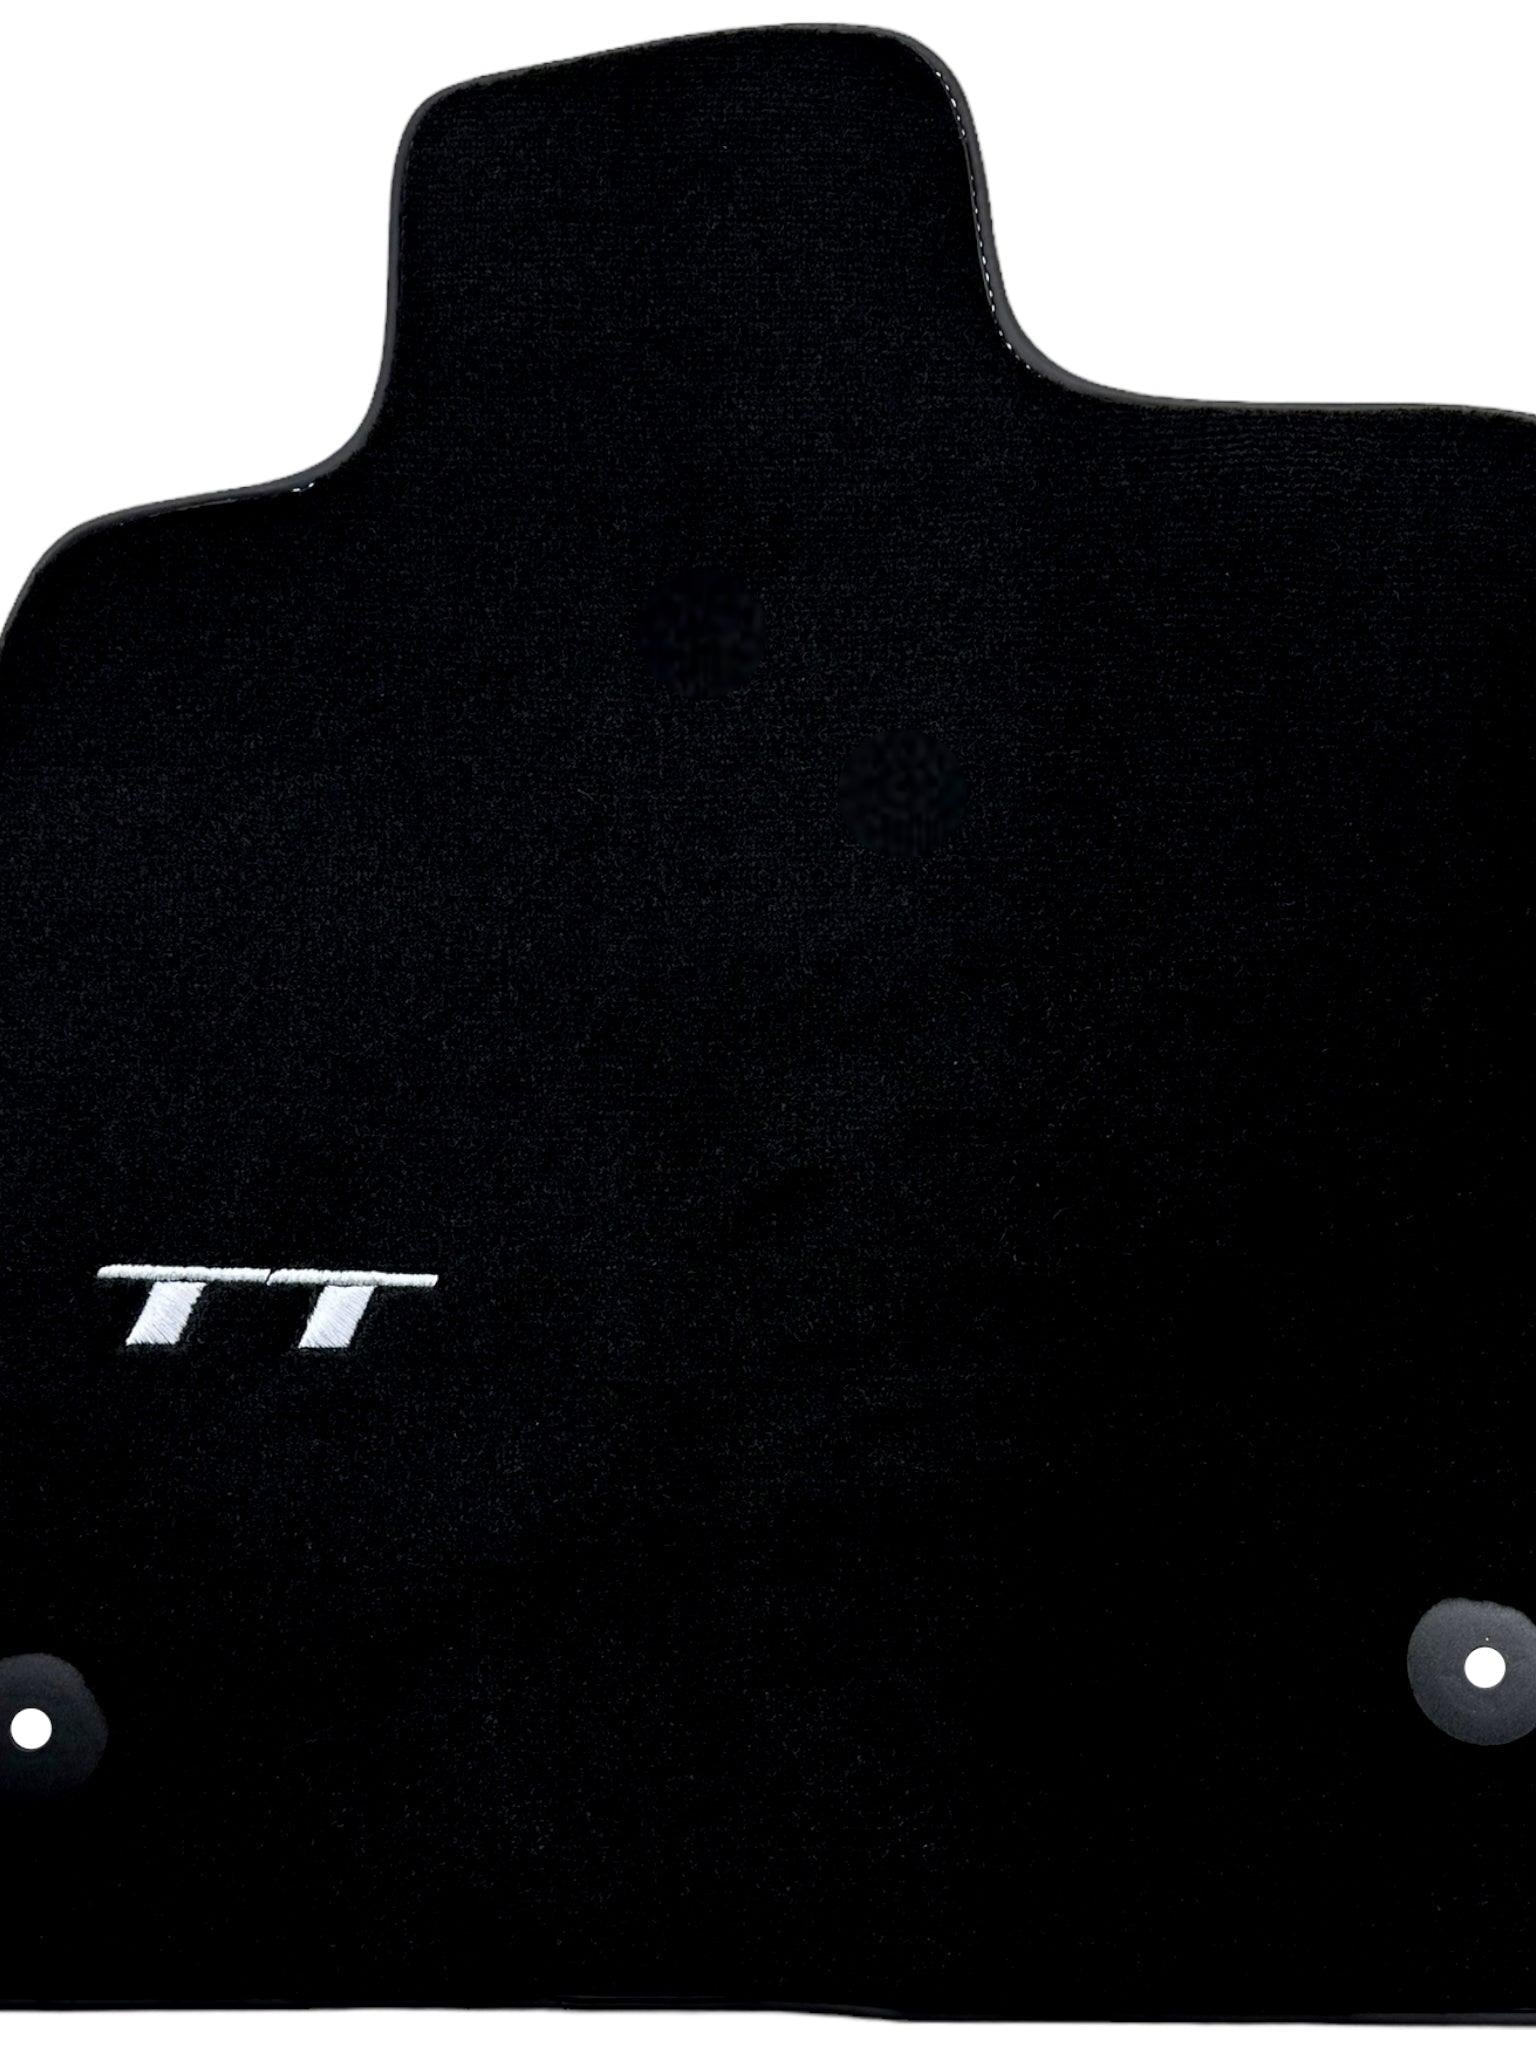 Black Floor Mats for Audi TT MK1 Coupe (1998-2006)